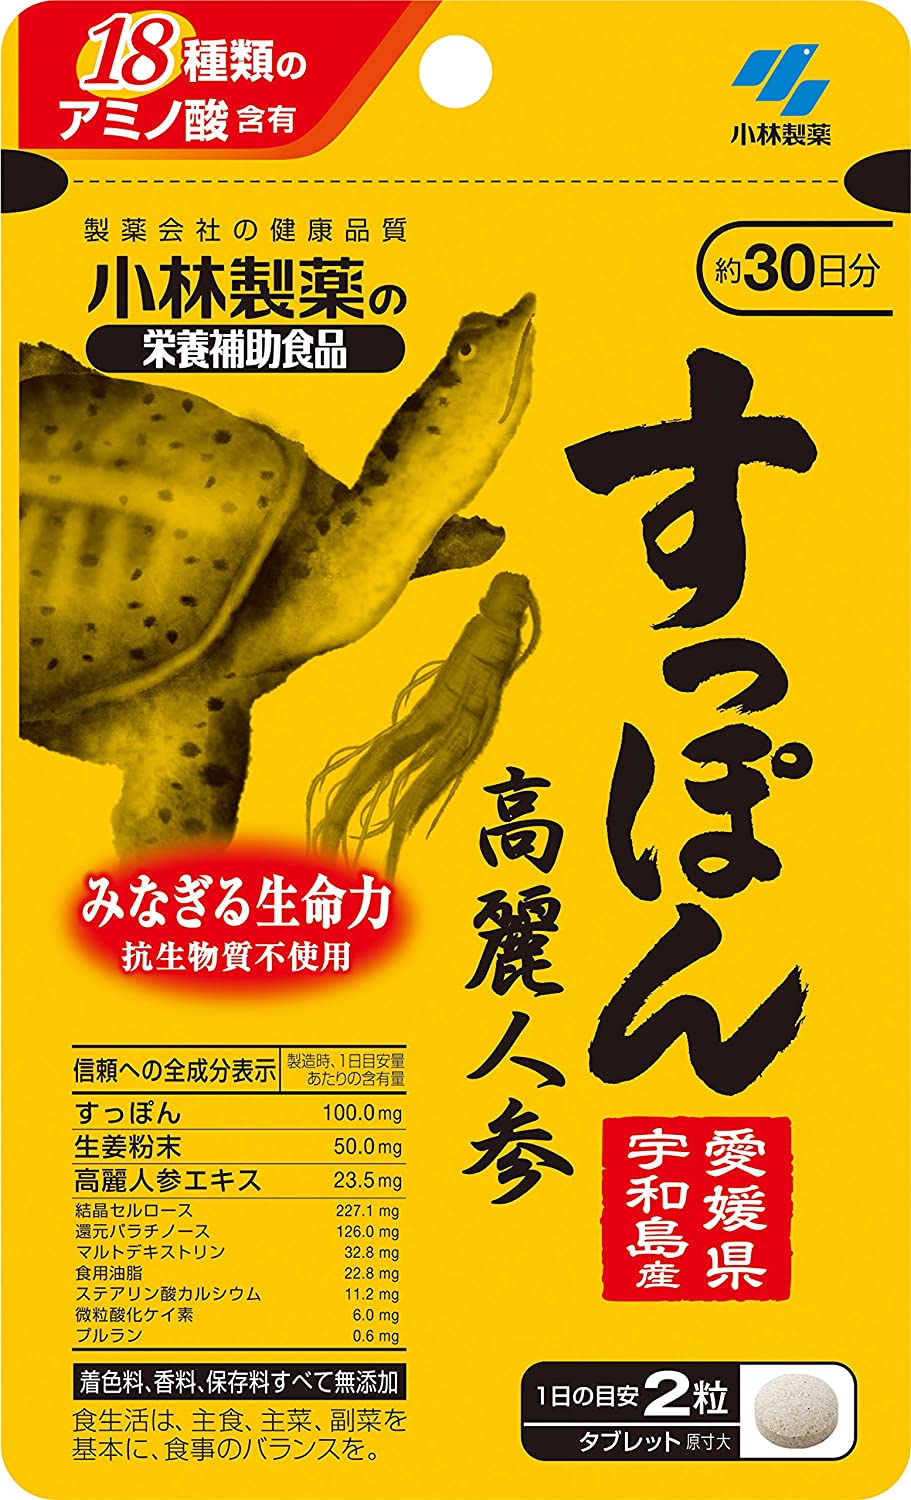 Комплекс для укрепления иммунитета и придание сил с экстрактом женьшеня и маслом черепахи Kobayashi, 60 шт